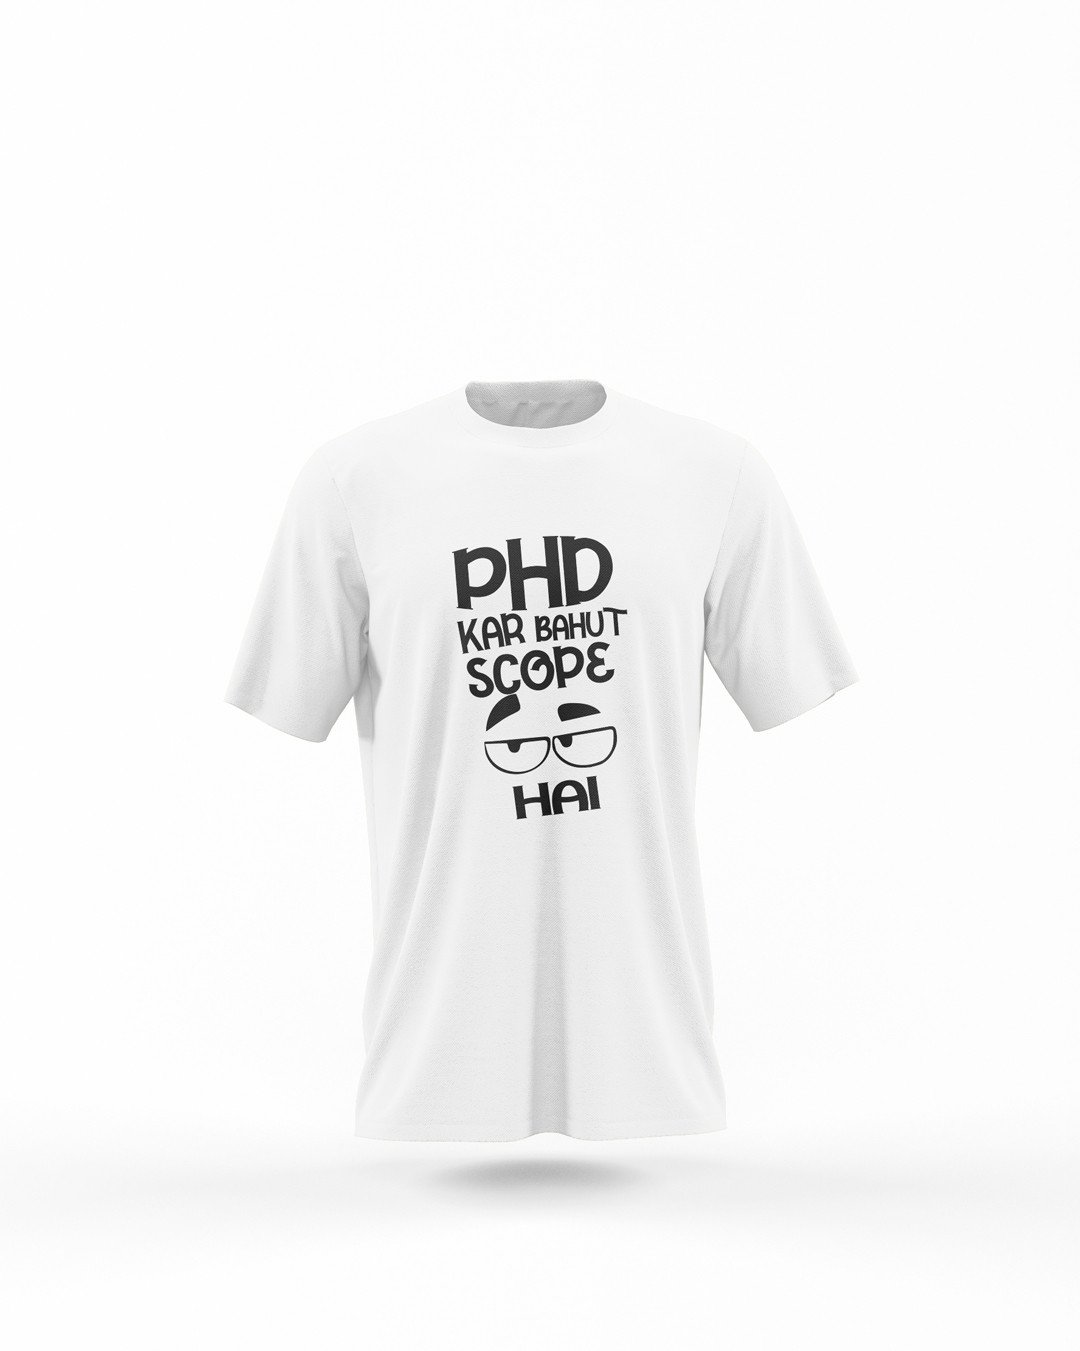 PHD Kar Bahut Scope Hai Printed T-Shirts